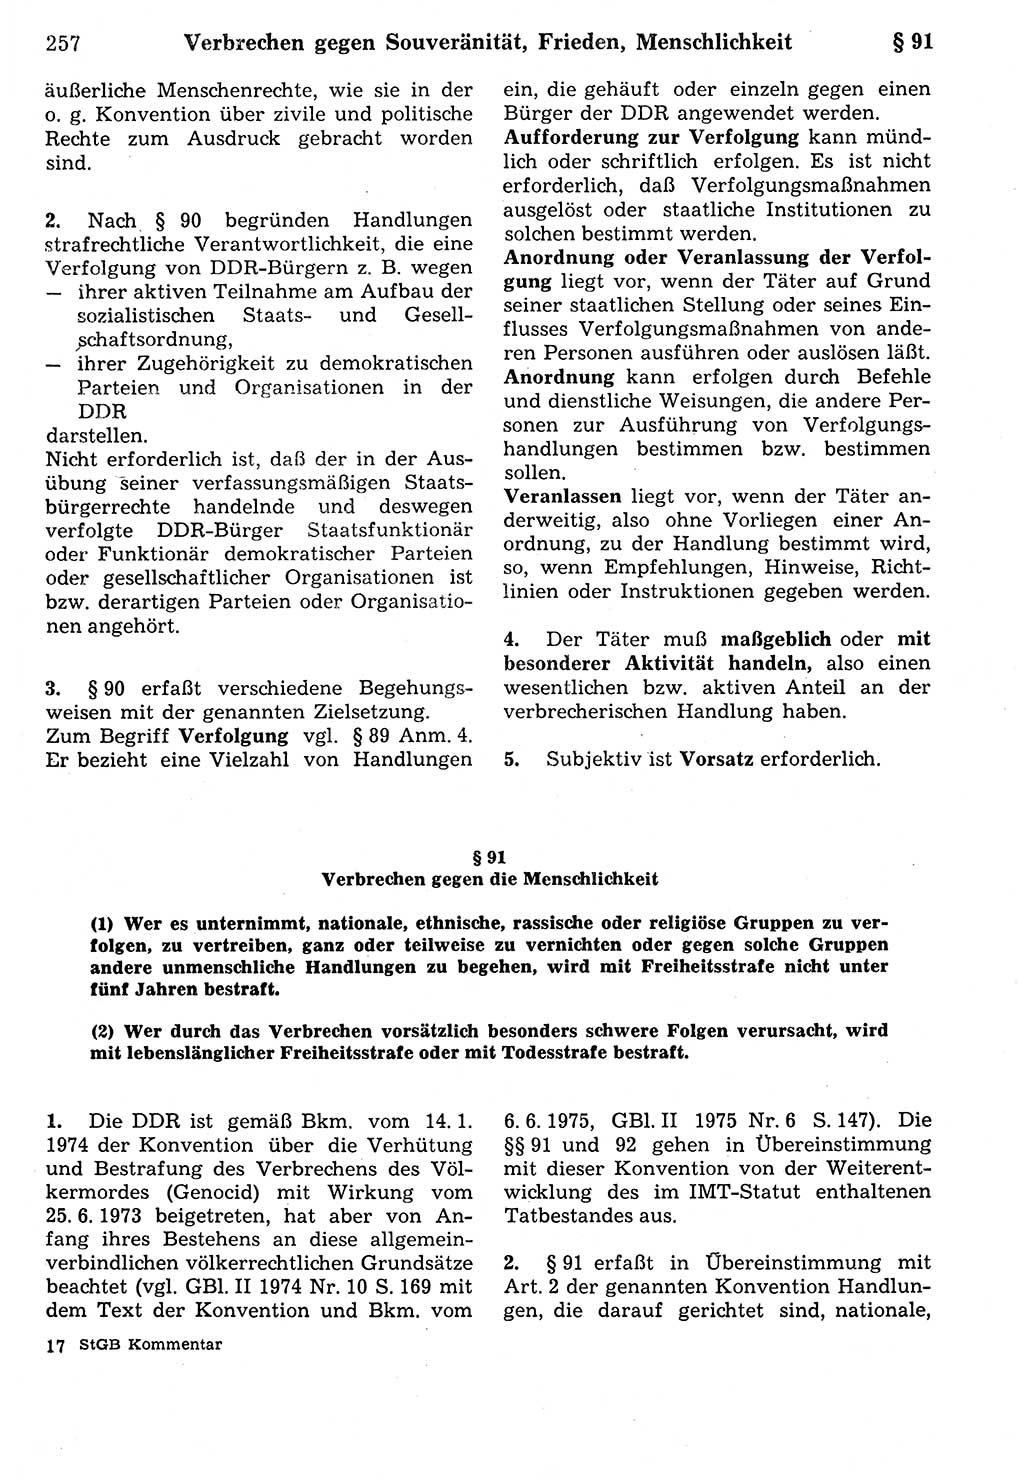 Strafrecht der Deutschen Demokratischen Republik (DDR), Kommentar zum Strafgesetzbuch (StGB) 1987, Seite 257 (Strafr. DDR Komm. StGB 1987, S. 257)